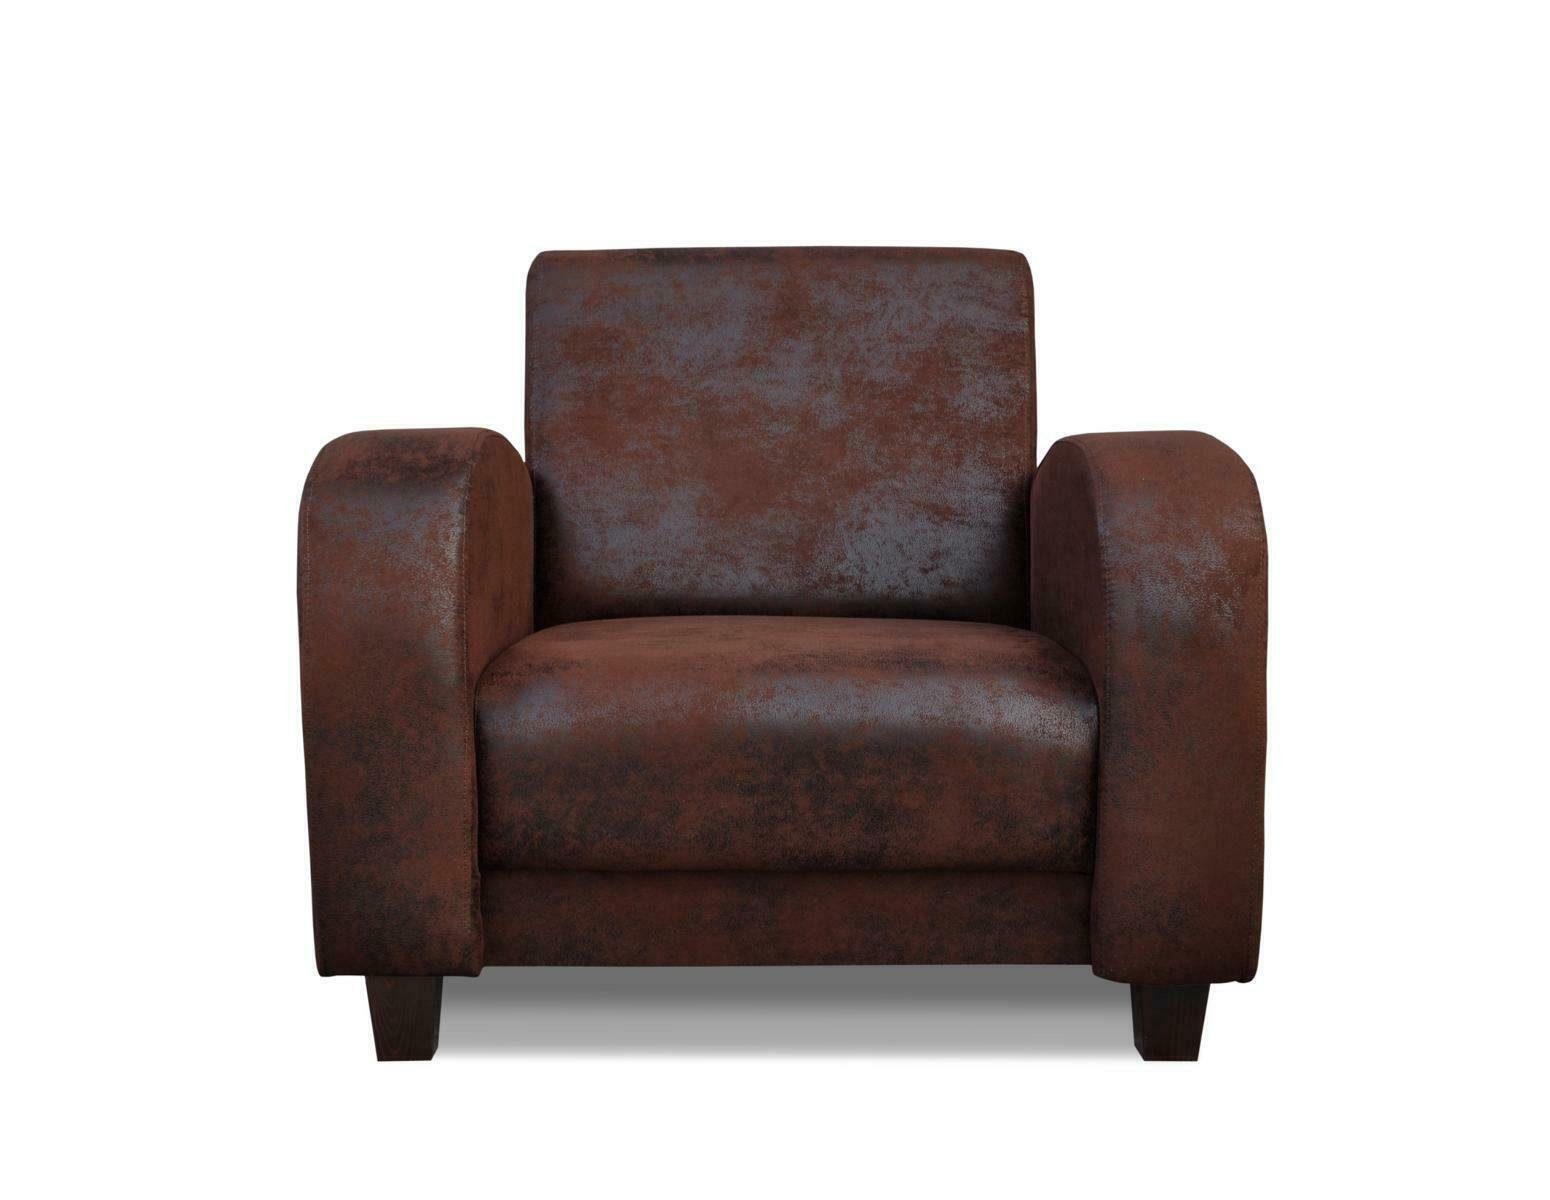 JVmoebel Sofa Vintages Ledersofa Set Made Couch Set Polstermöbel Neu, 3+2+1 in Europe Sitzer